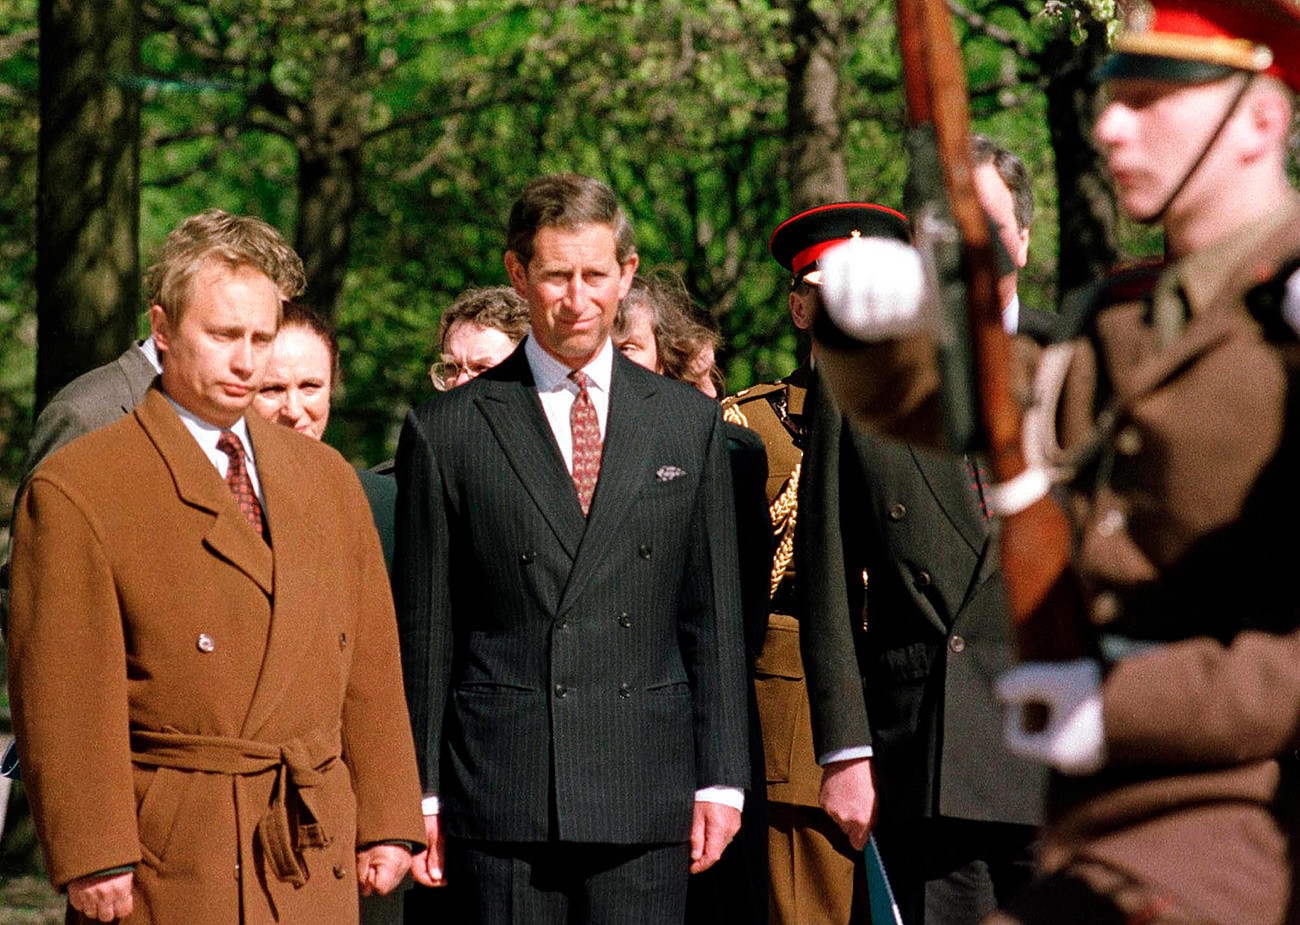 Владимир Путин (лево), који је тада био задужен за спољне односе Санкт Петербурга код градоначелника Анатолија Сопчака, присуствује церемонији полагања венца са принцом  Чарлсом на Пискарјовском гробљу у Санкт Петербургу. Фотографија начињена 17. маја 1994. године